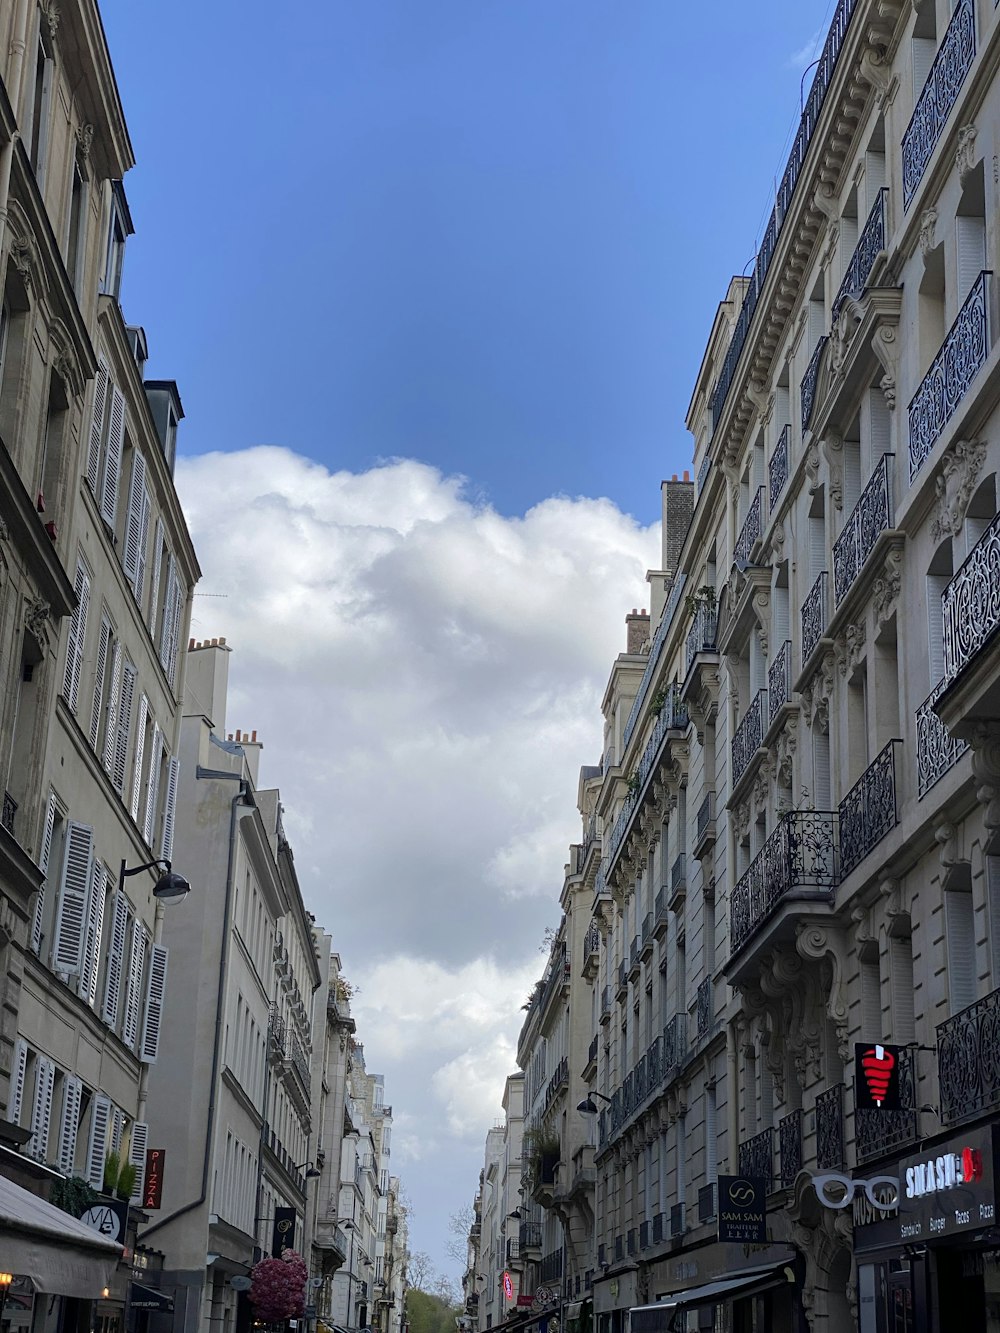 Une rue de la ville bordée de grands immeubles sous un ciel bleu nuageux